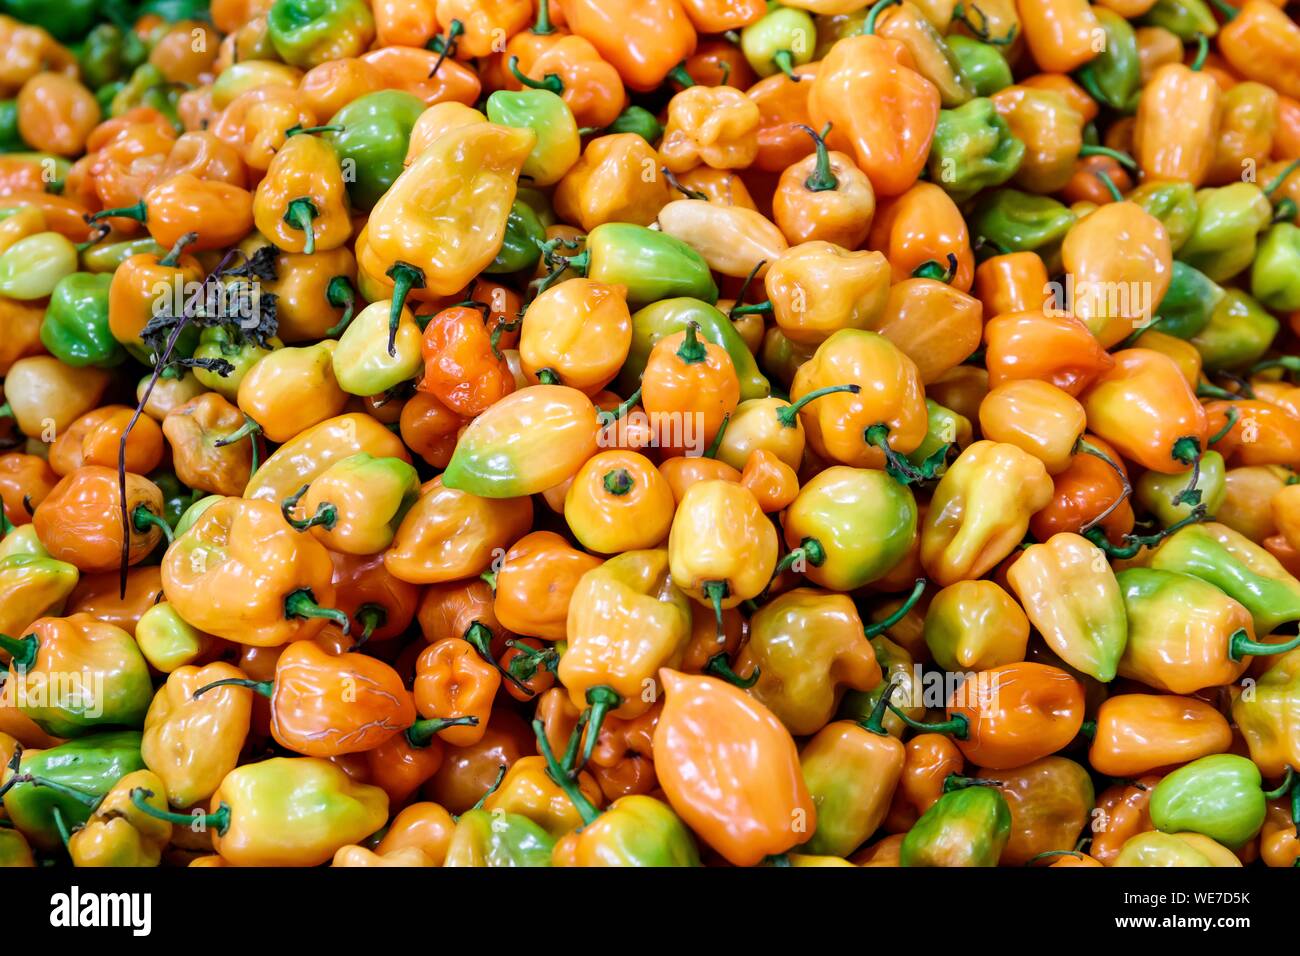 Mexico, Campeche state, Campeche, manzanos chilli pepper Stock Photo